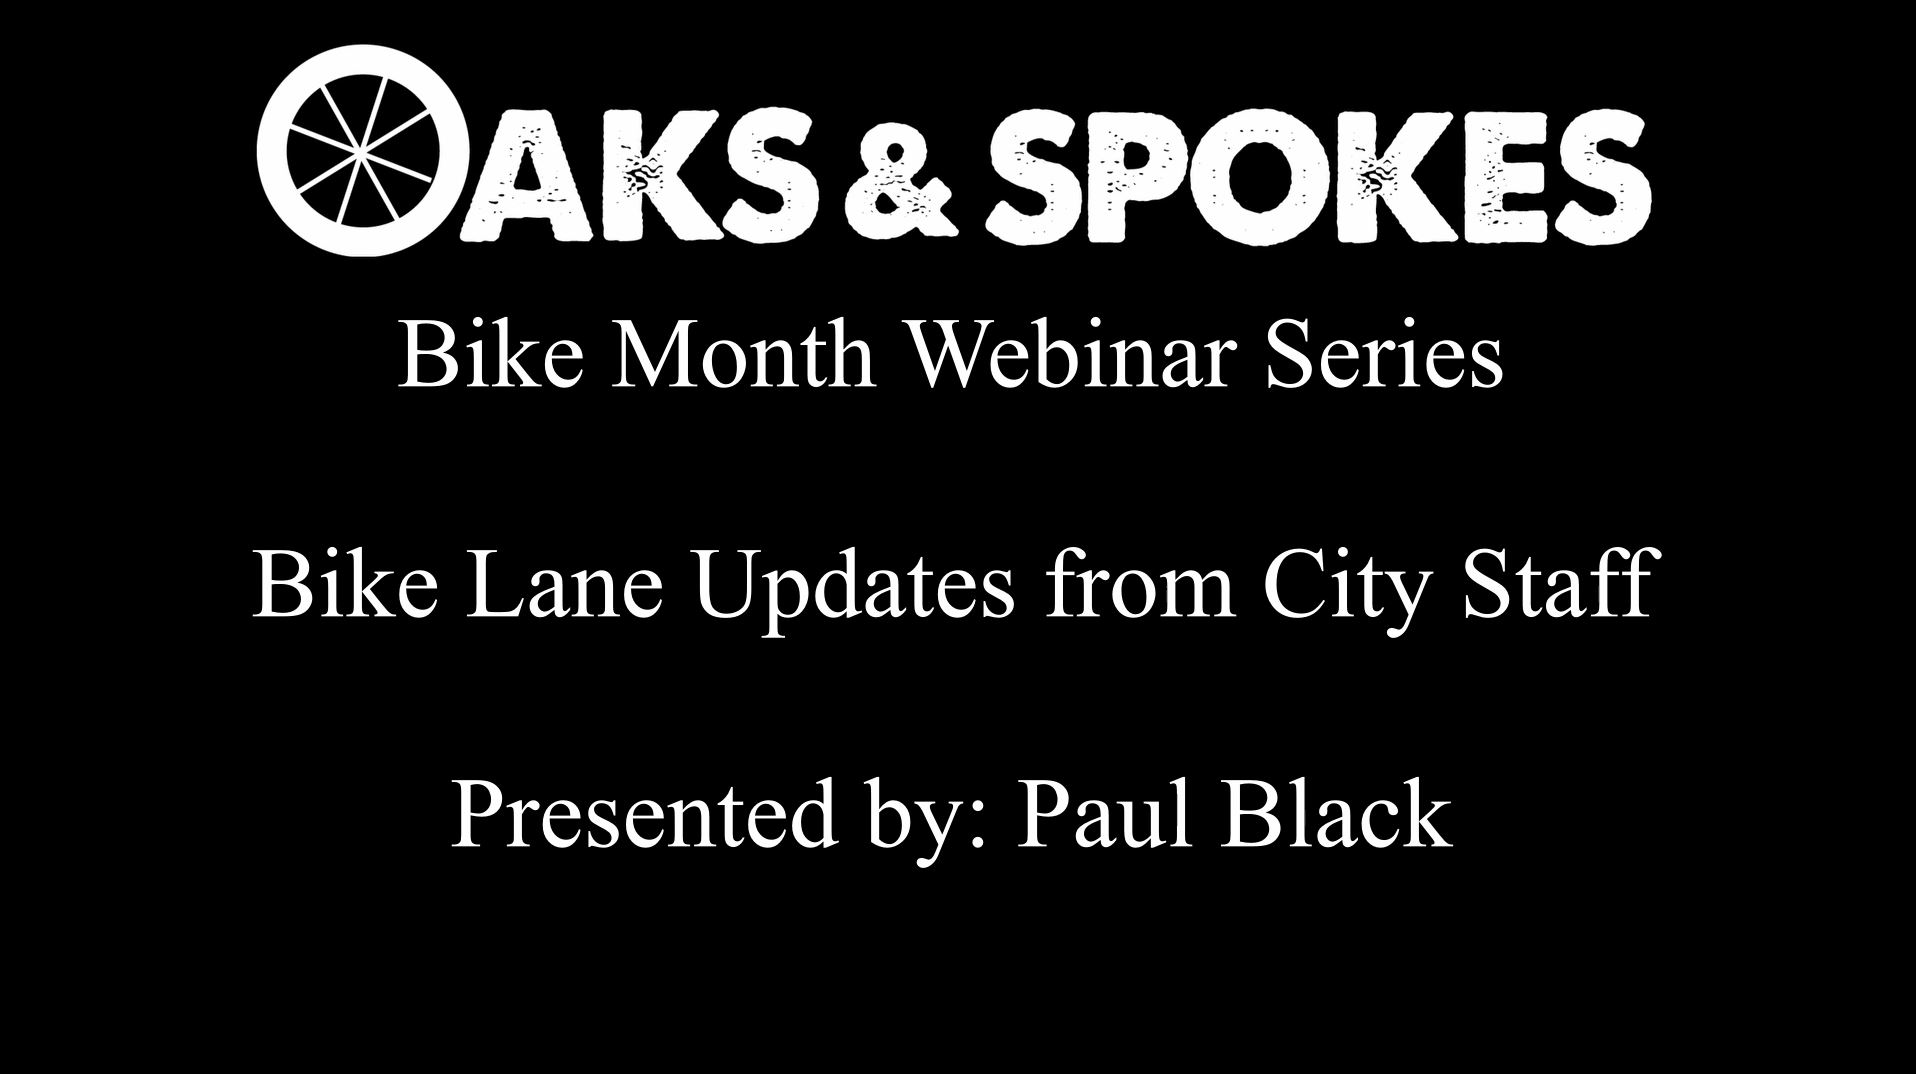 Oaks & Spokes Webinar: Bike Lane Updates from City Staff